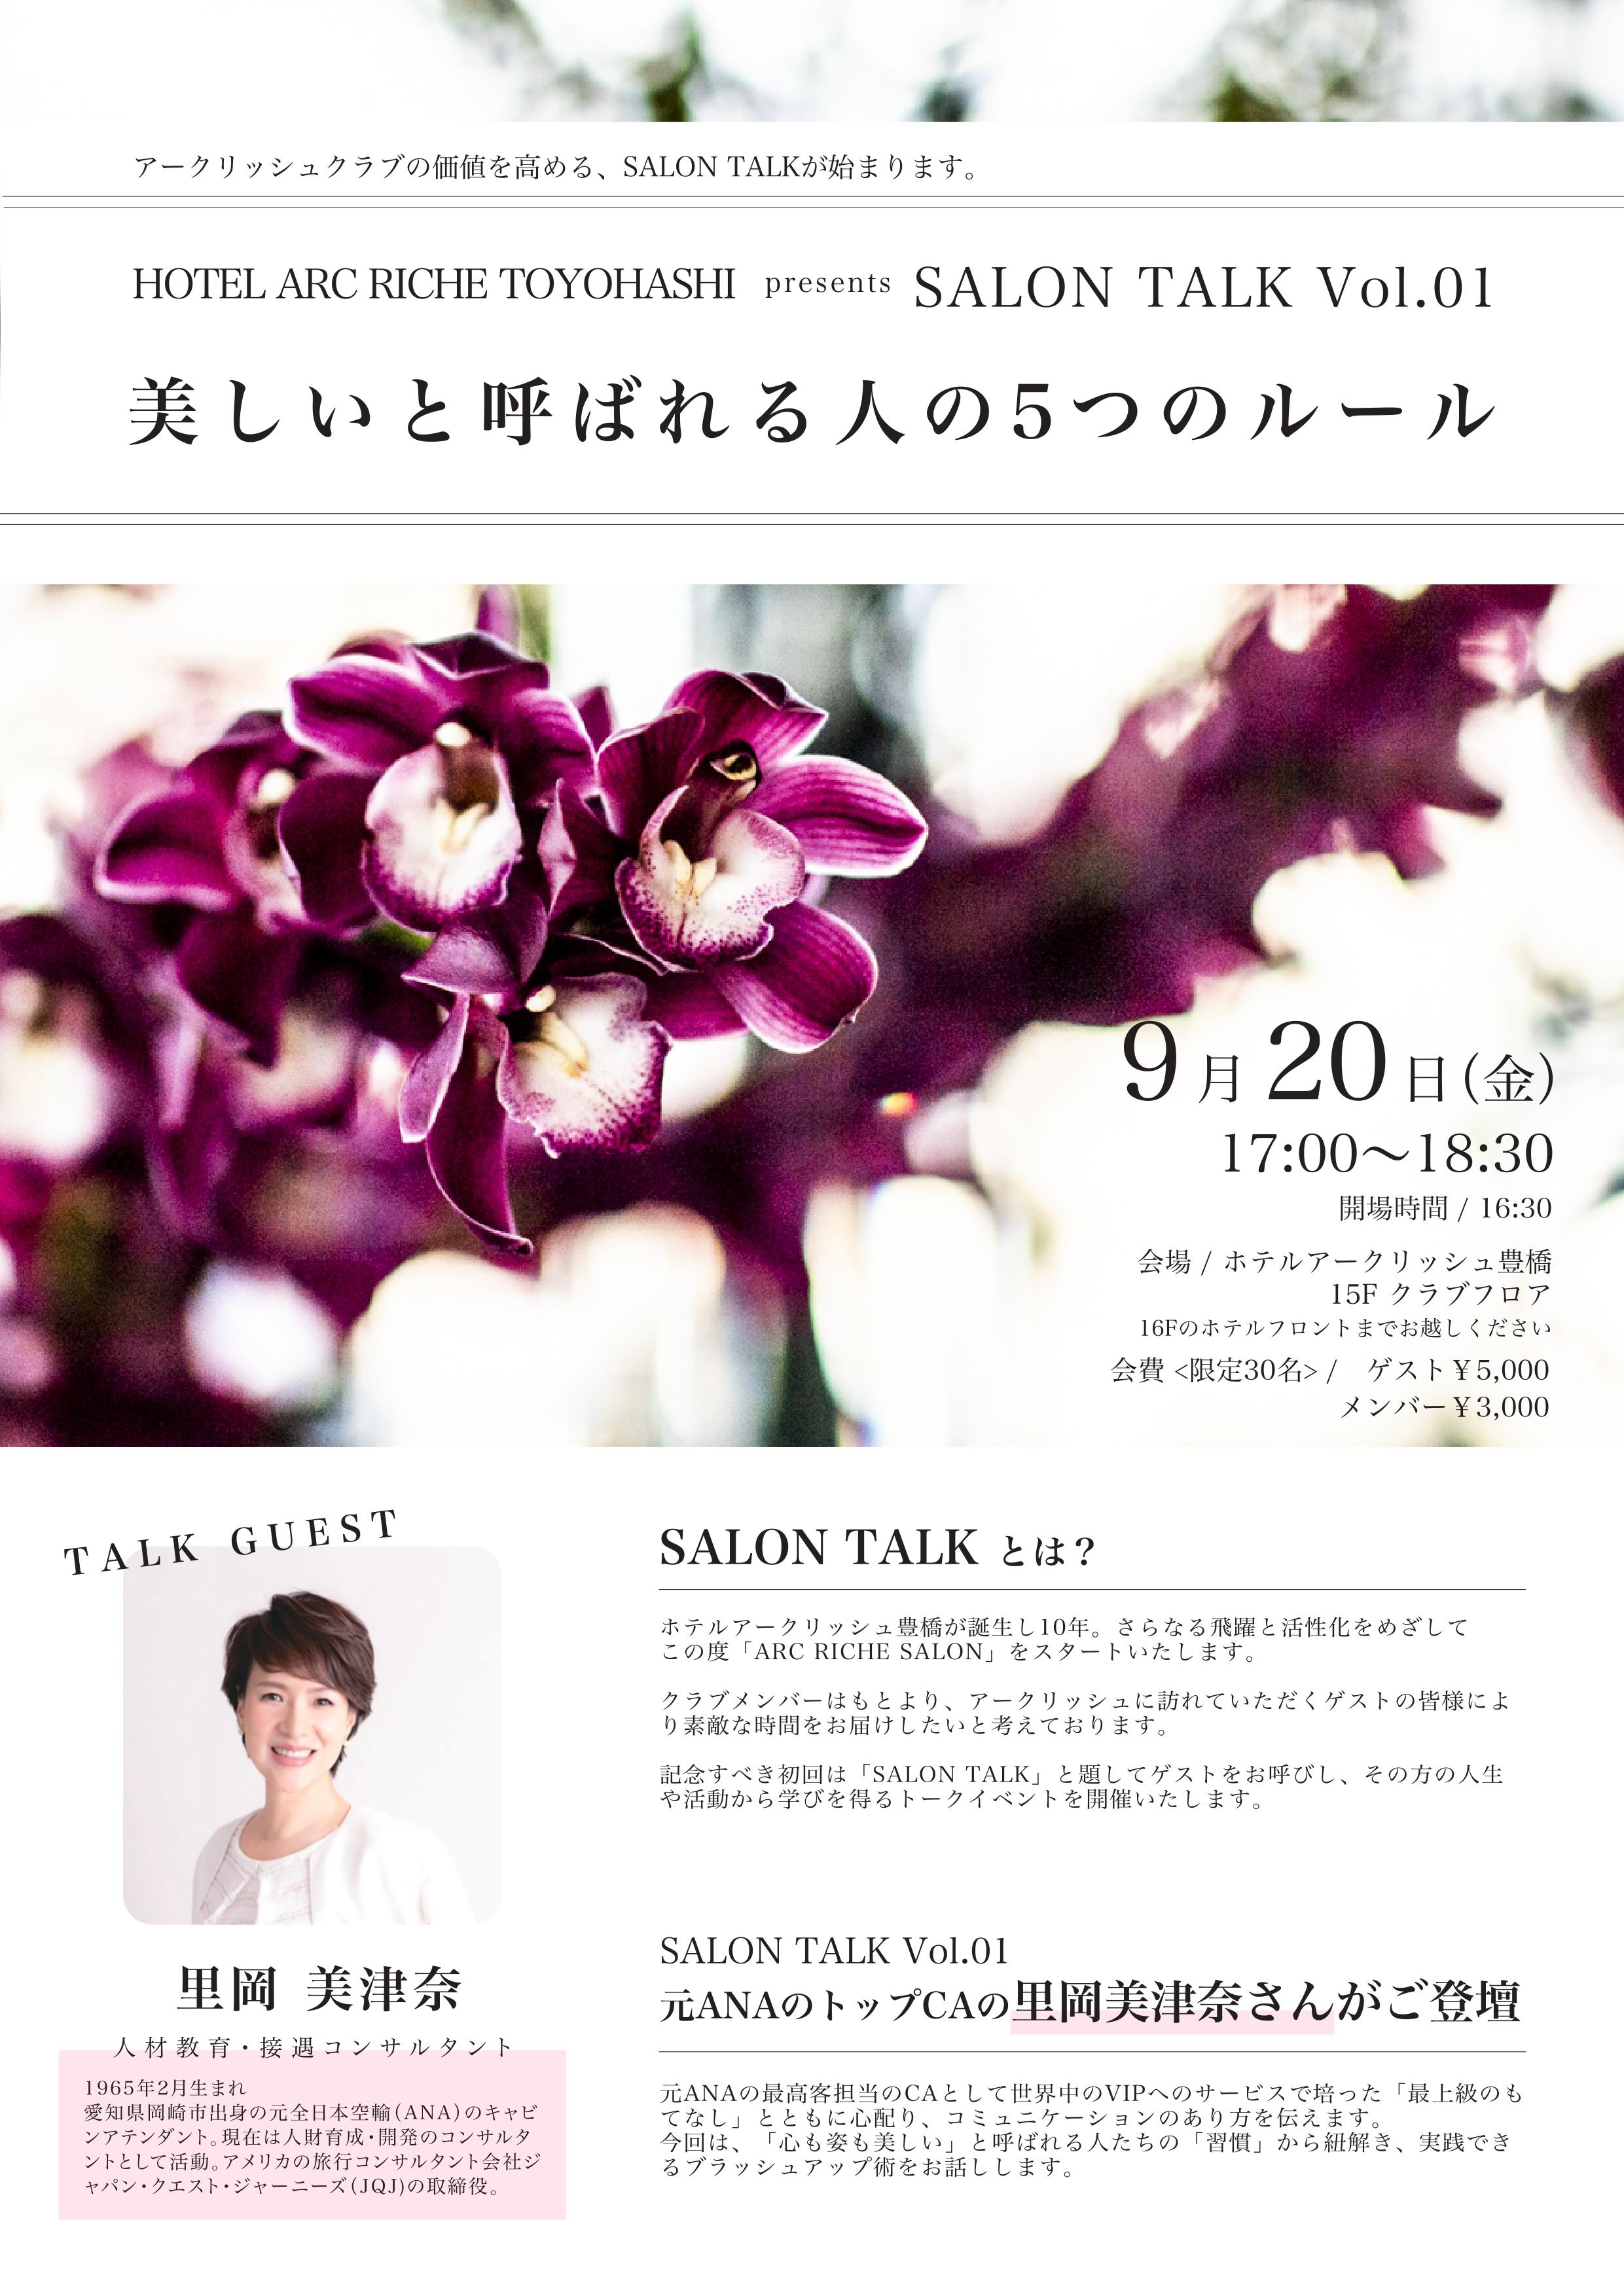 Salon Talk Vol 01 里岡美津奈 ホテルアークリッシュ豊橋 Hotel Arc Riche Toyohashi